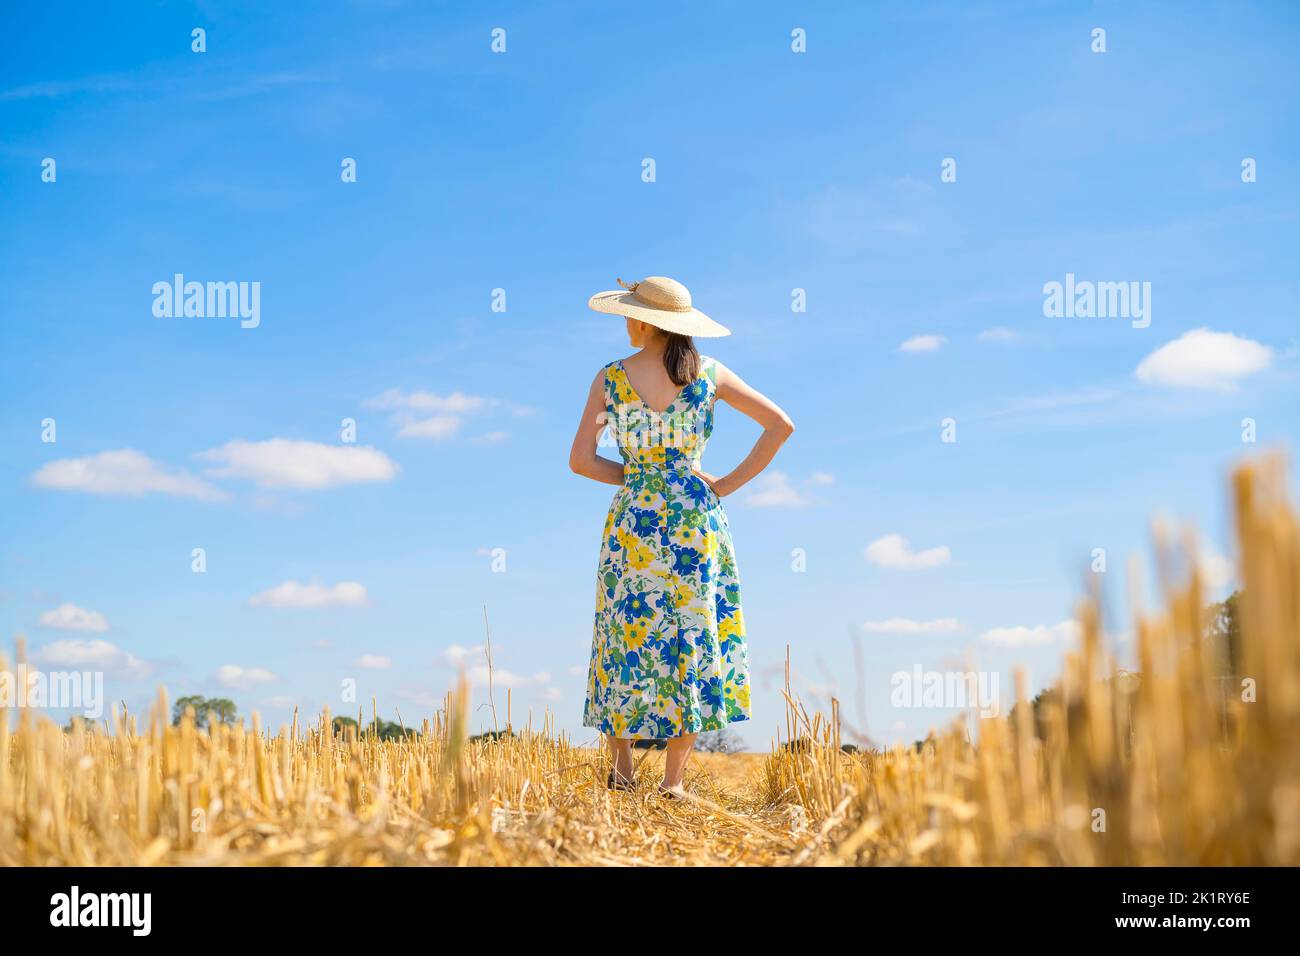 Vue arrière d'une femme vêtue d'une robe d'été et chapeau de paille dans un champ avec un ciel bleu par temps ensoleillé. Banque D'Images